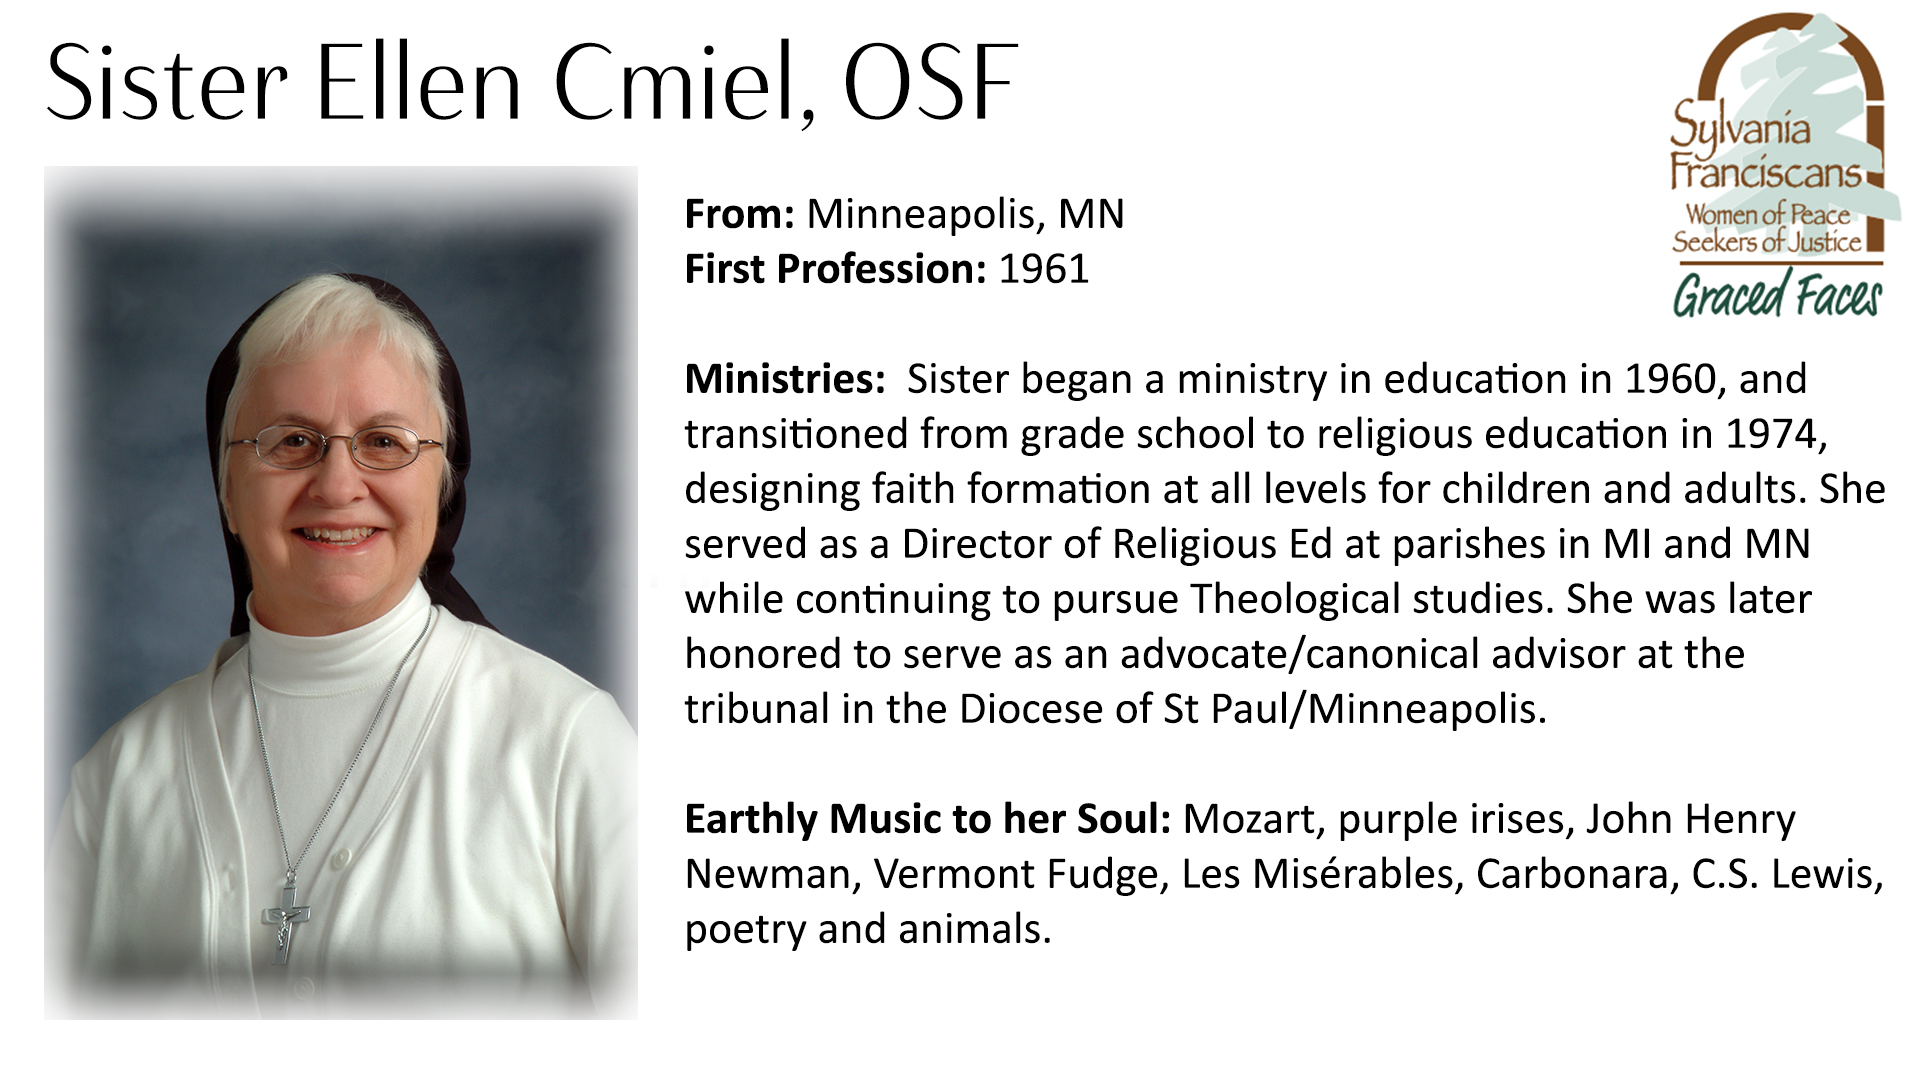 SIster Ellen Cmiel, OSF